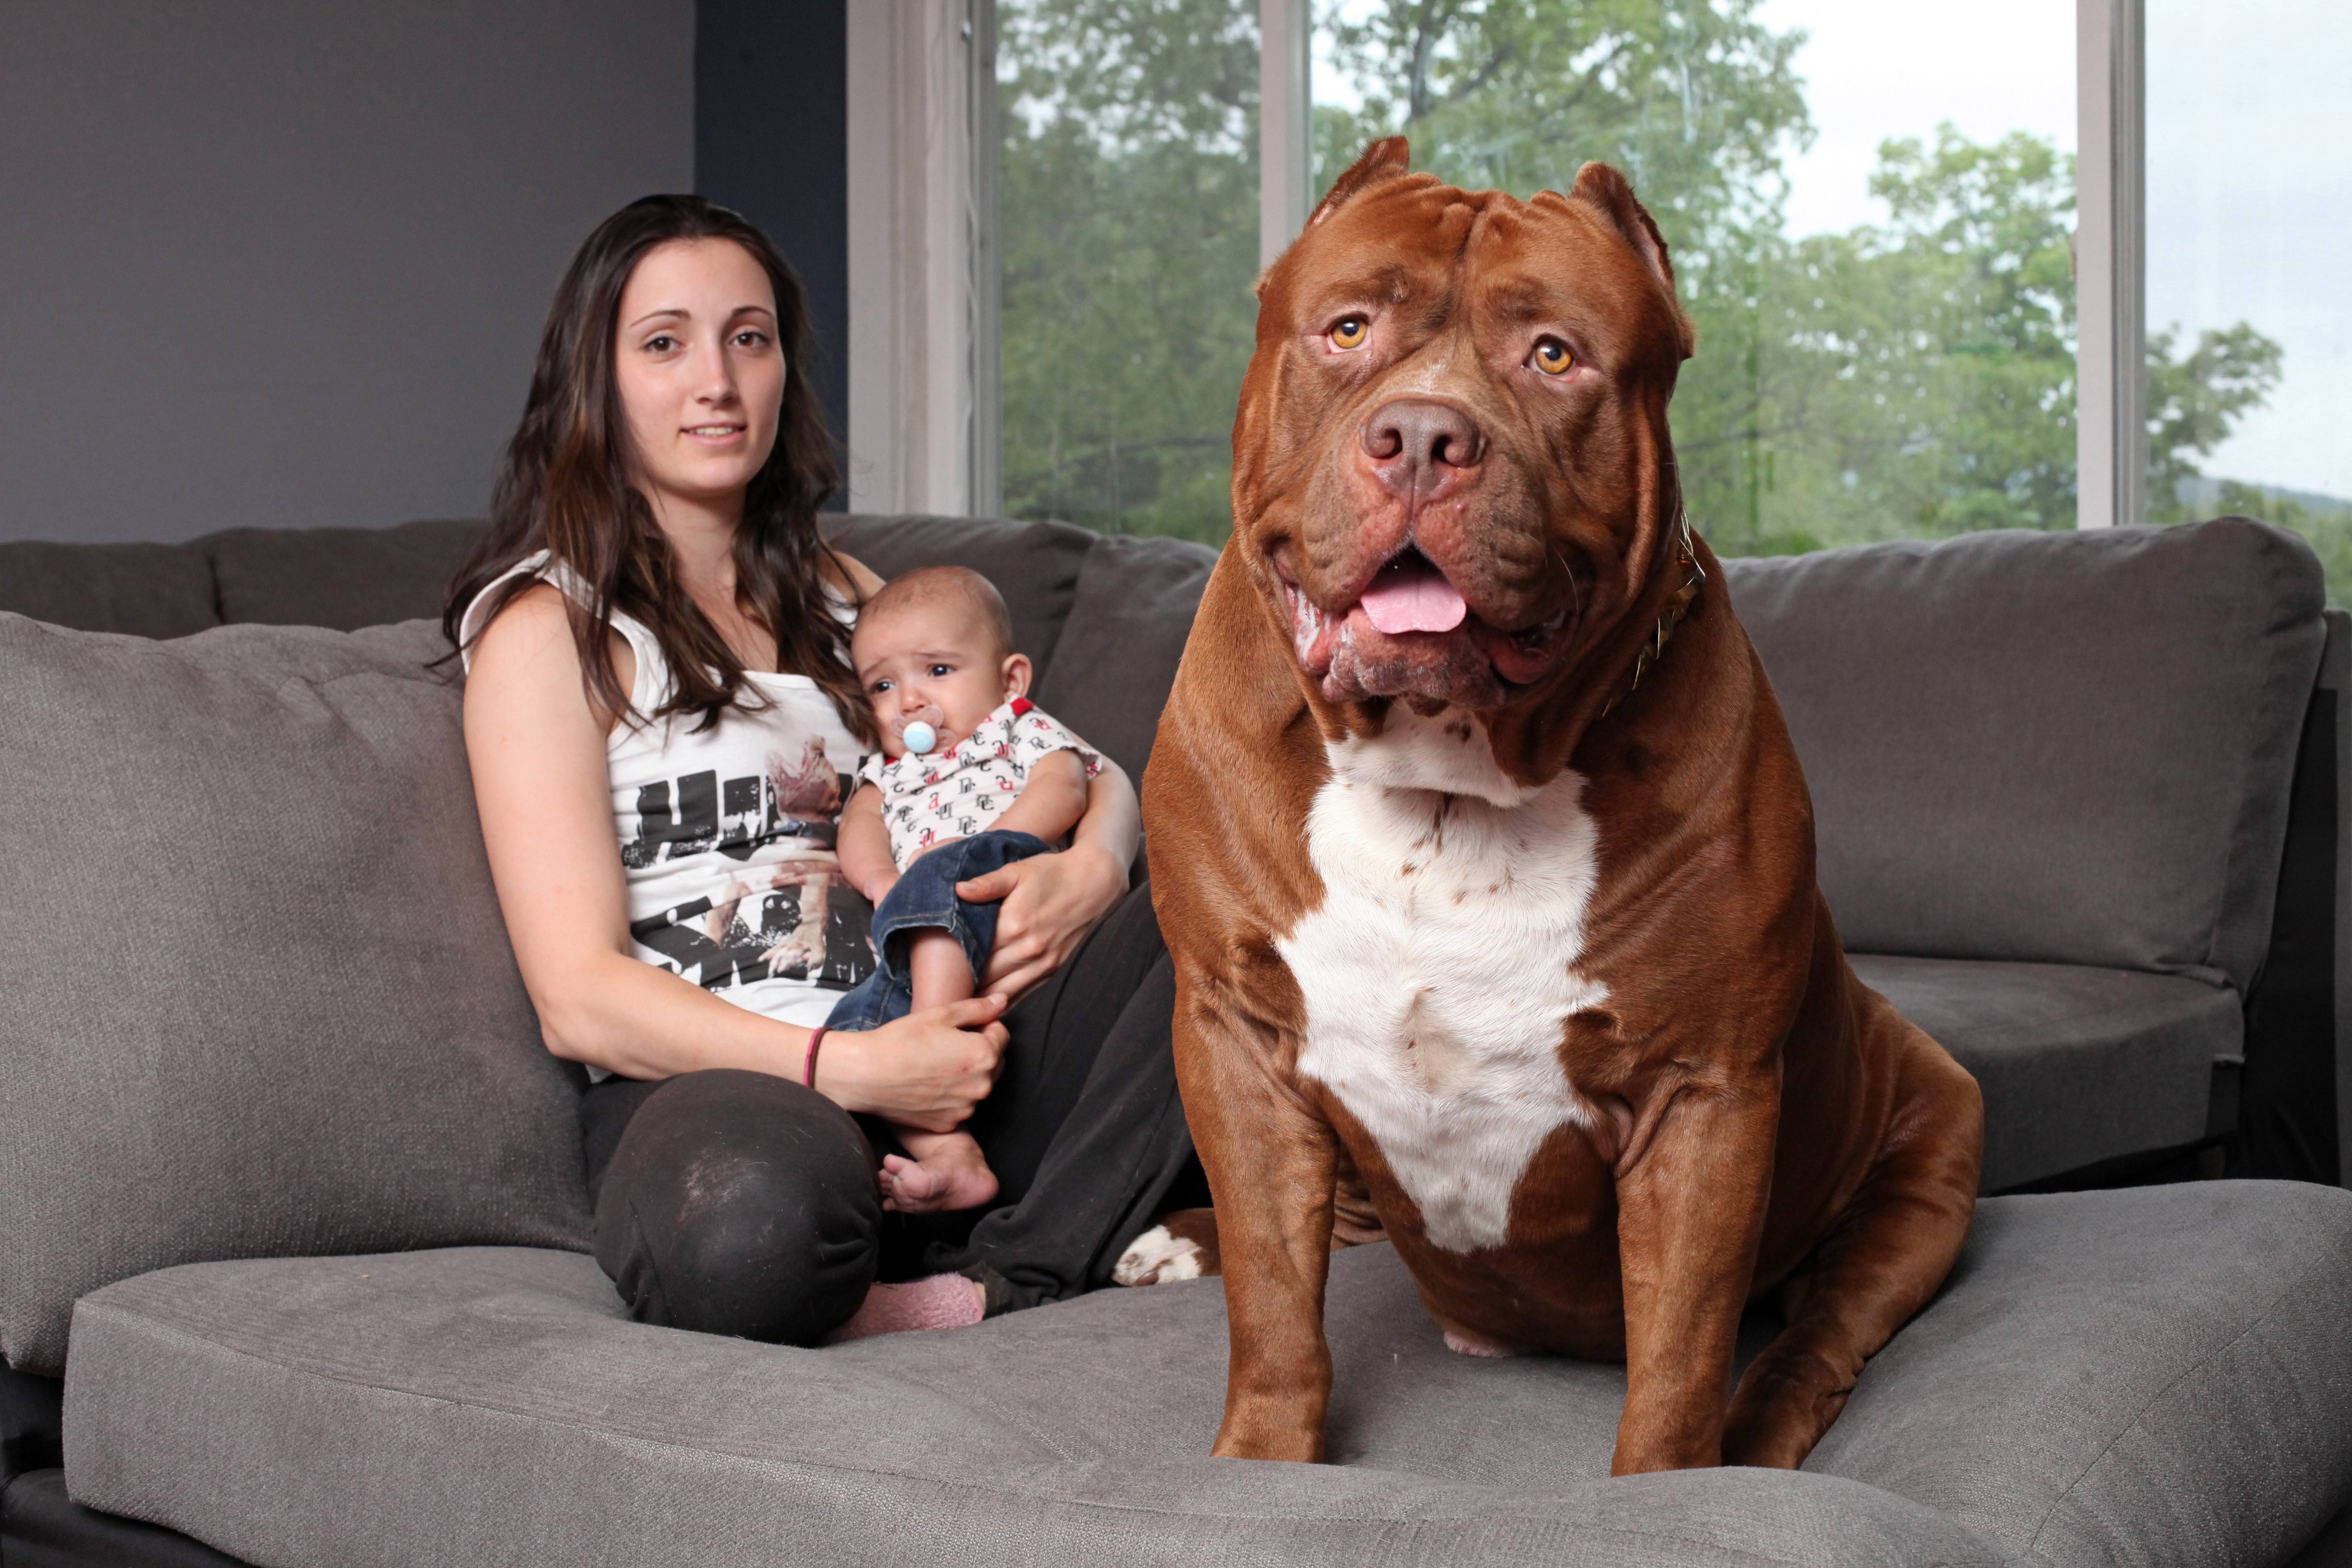 Самая большая собака в мире (фото): зевс и его «коллеги»